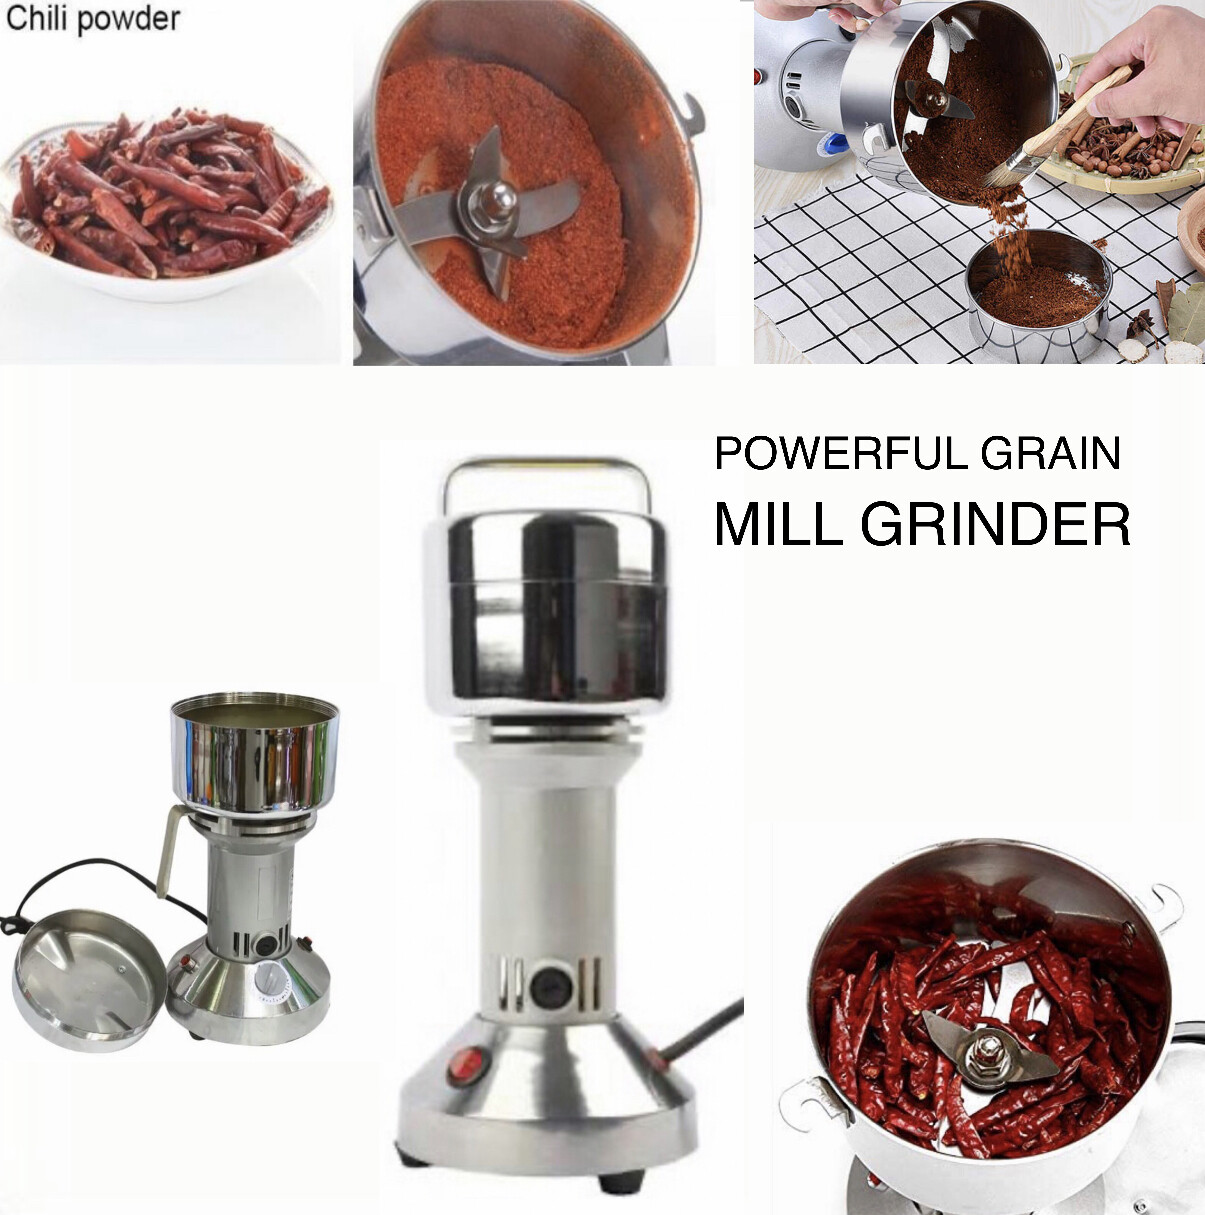 Mill Grinder